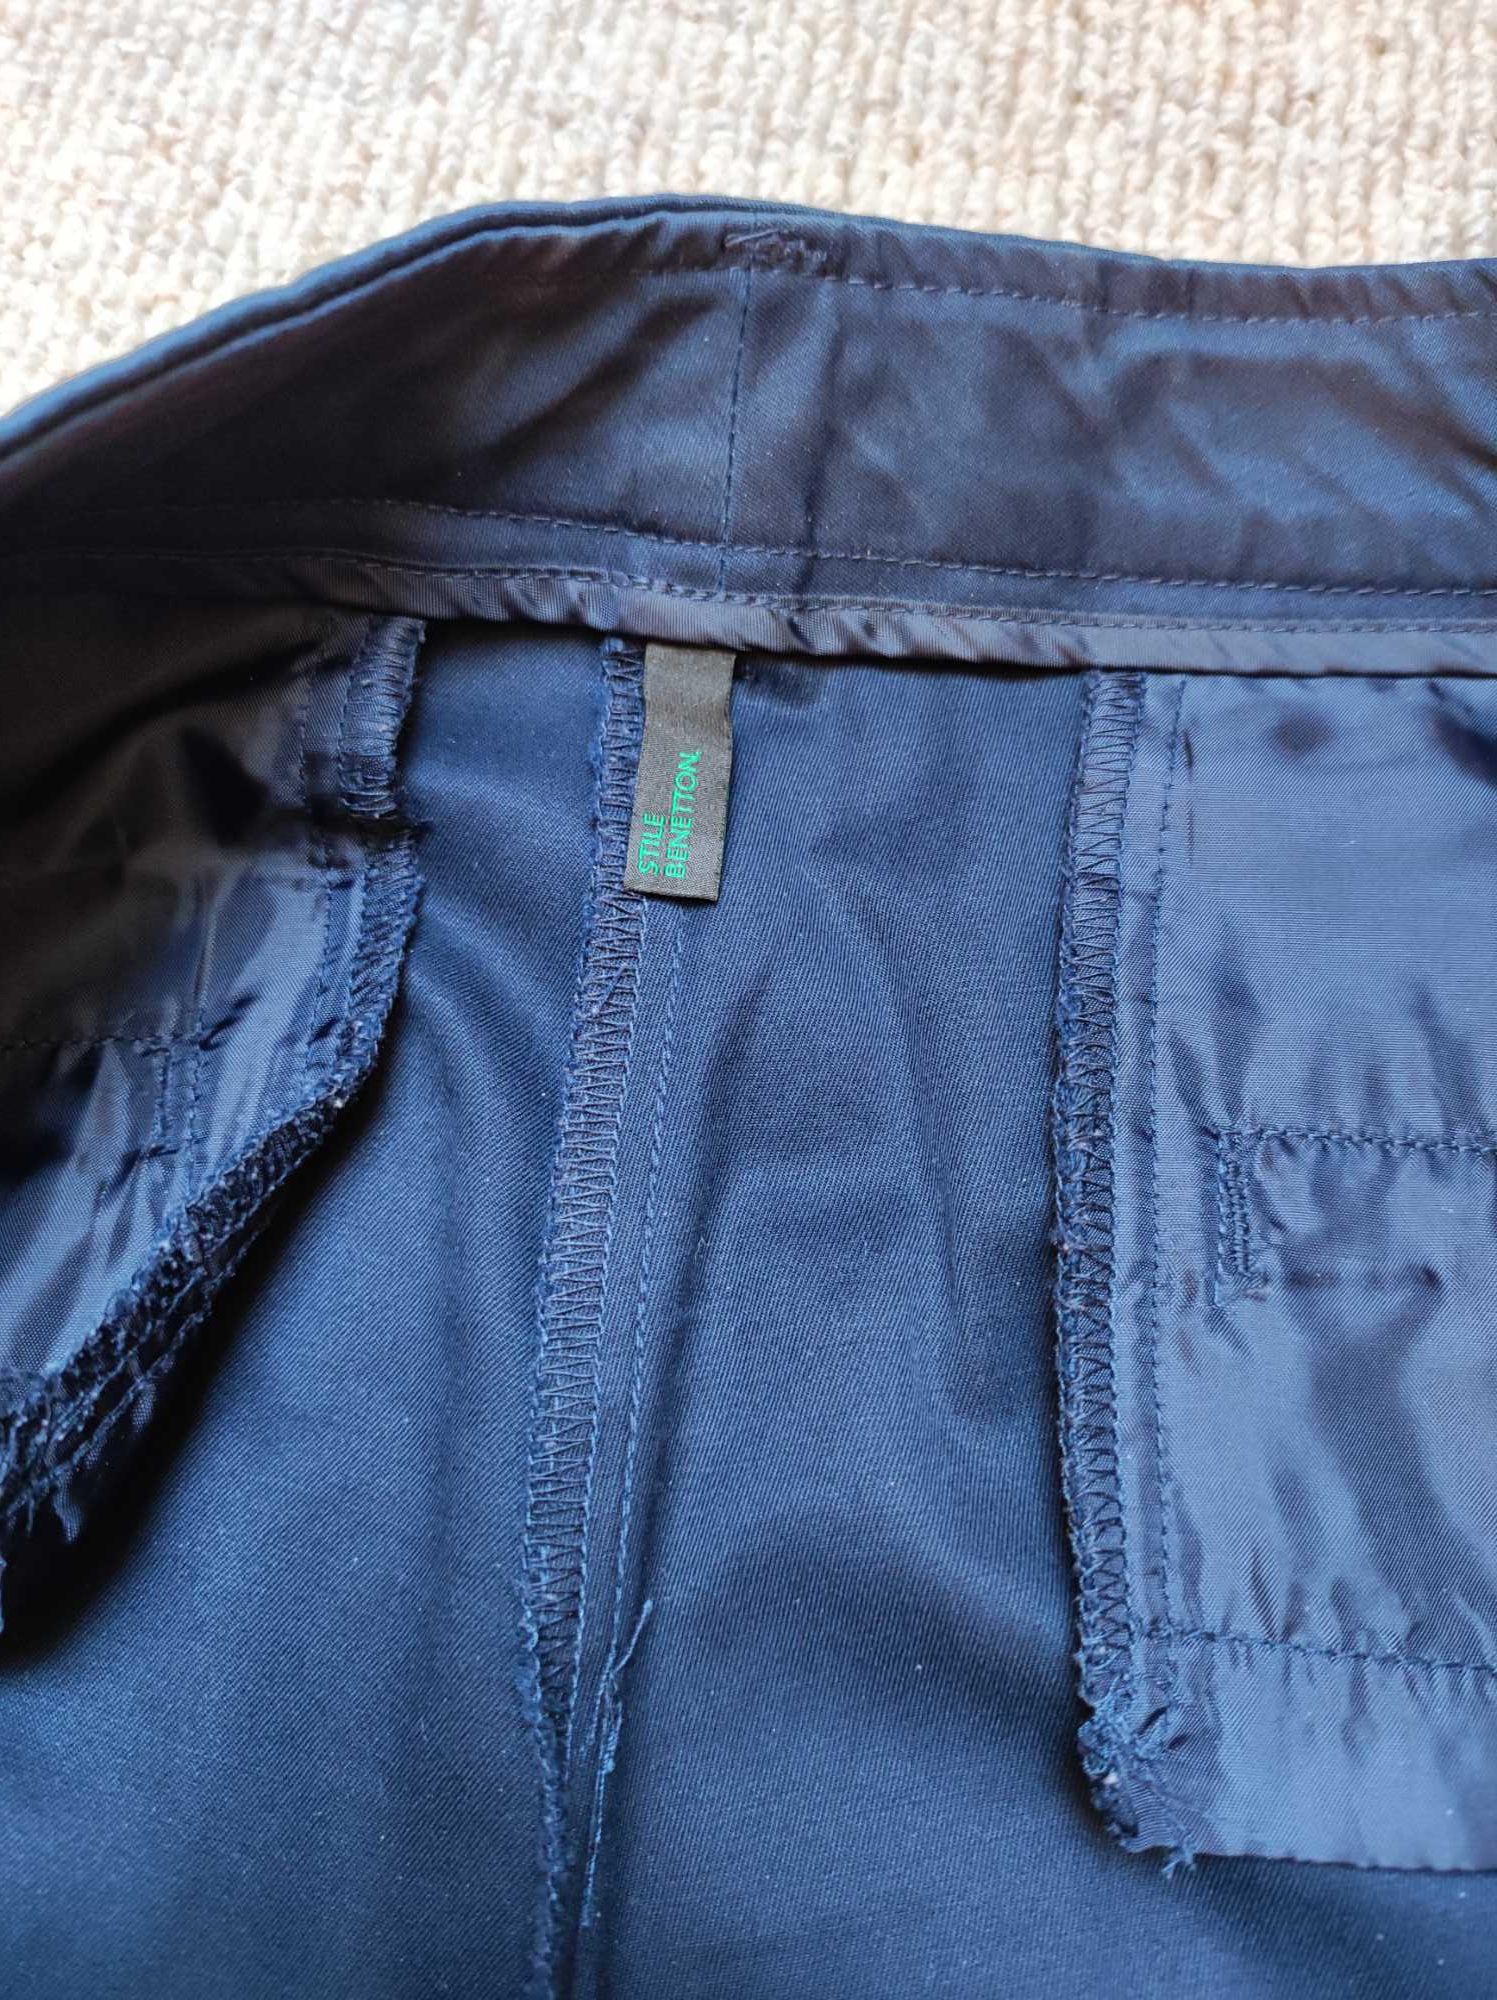 Spodnie bawełniane o długości  7/8 rozm. 42 firmy Benetton